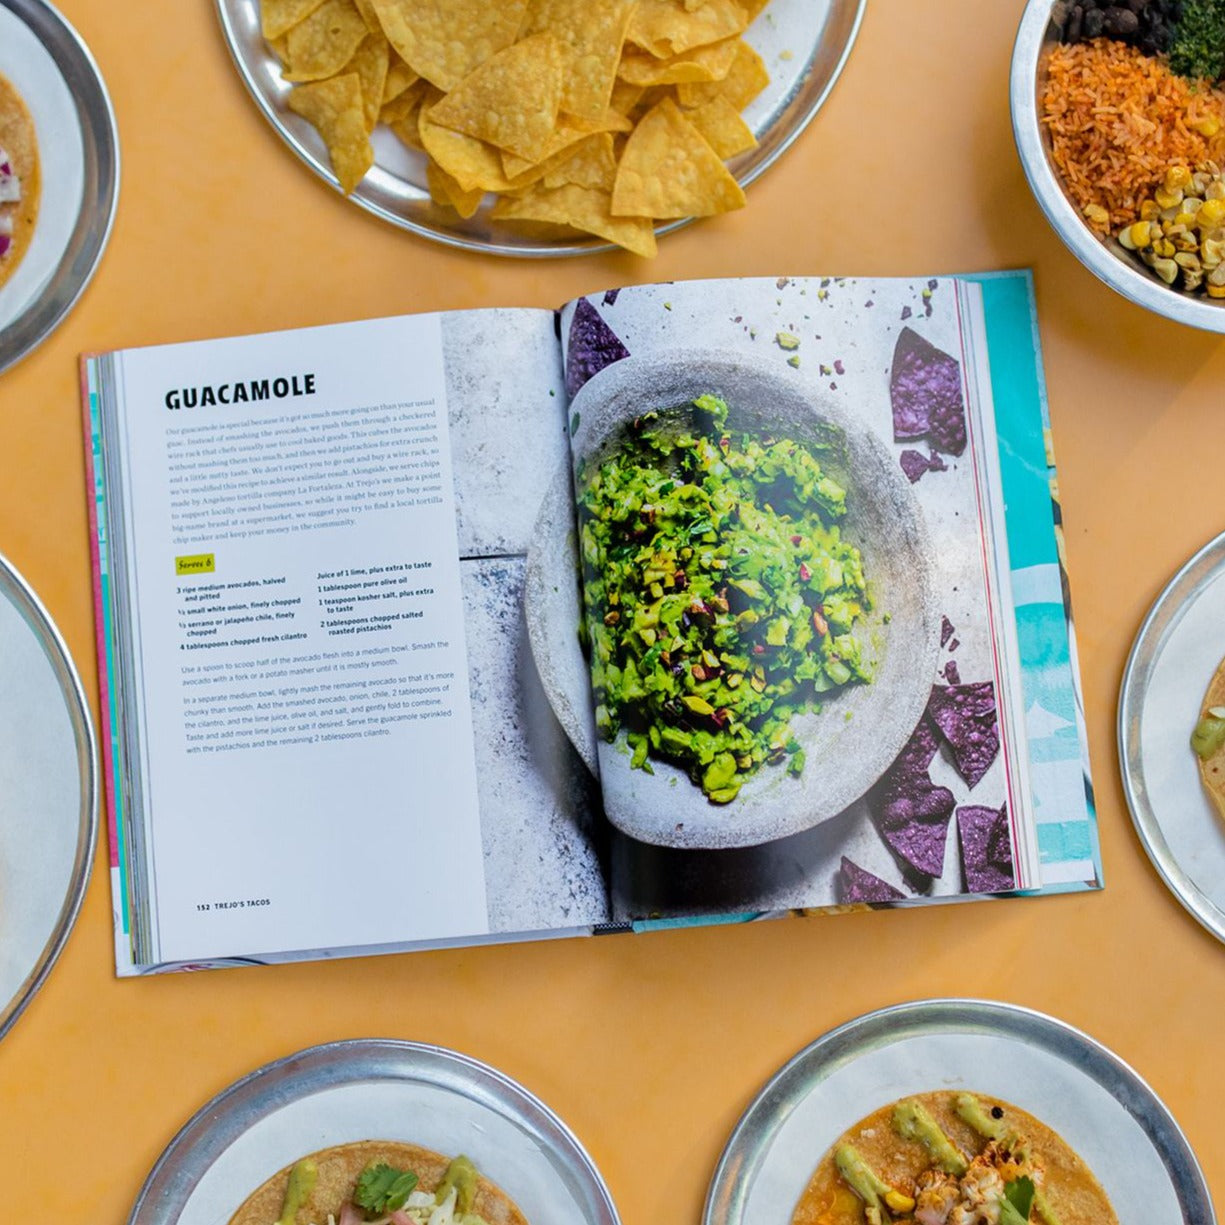 Trejo's Tacos Cookbook signed by Danny Trejo